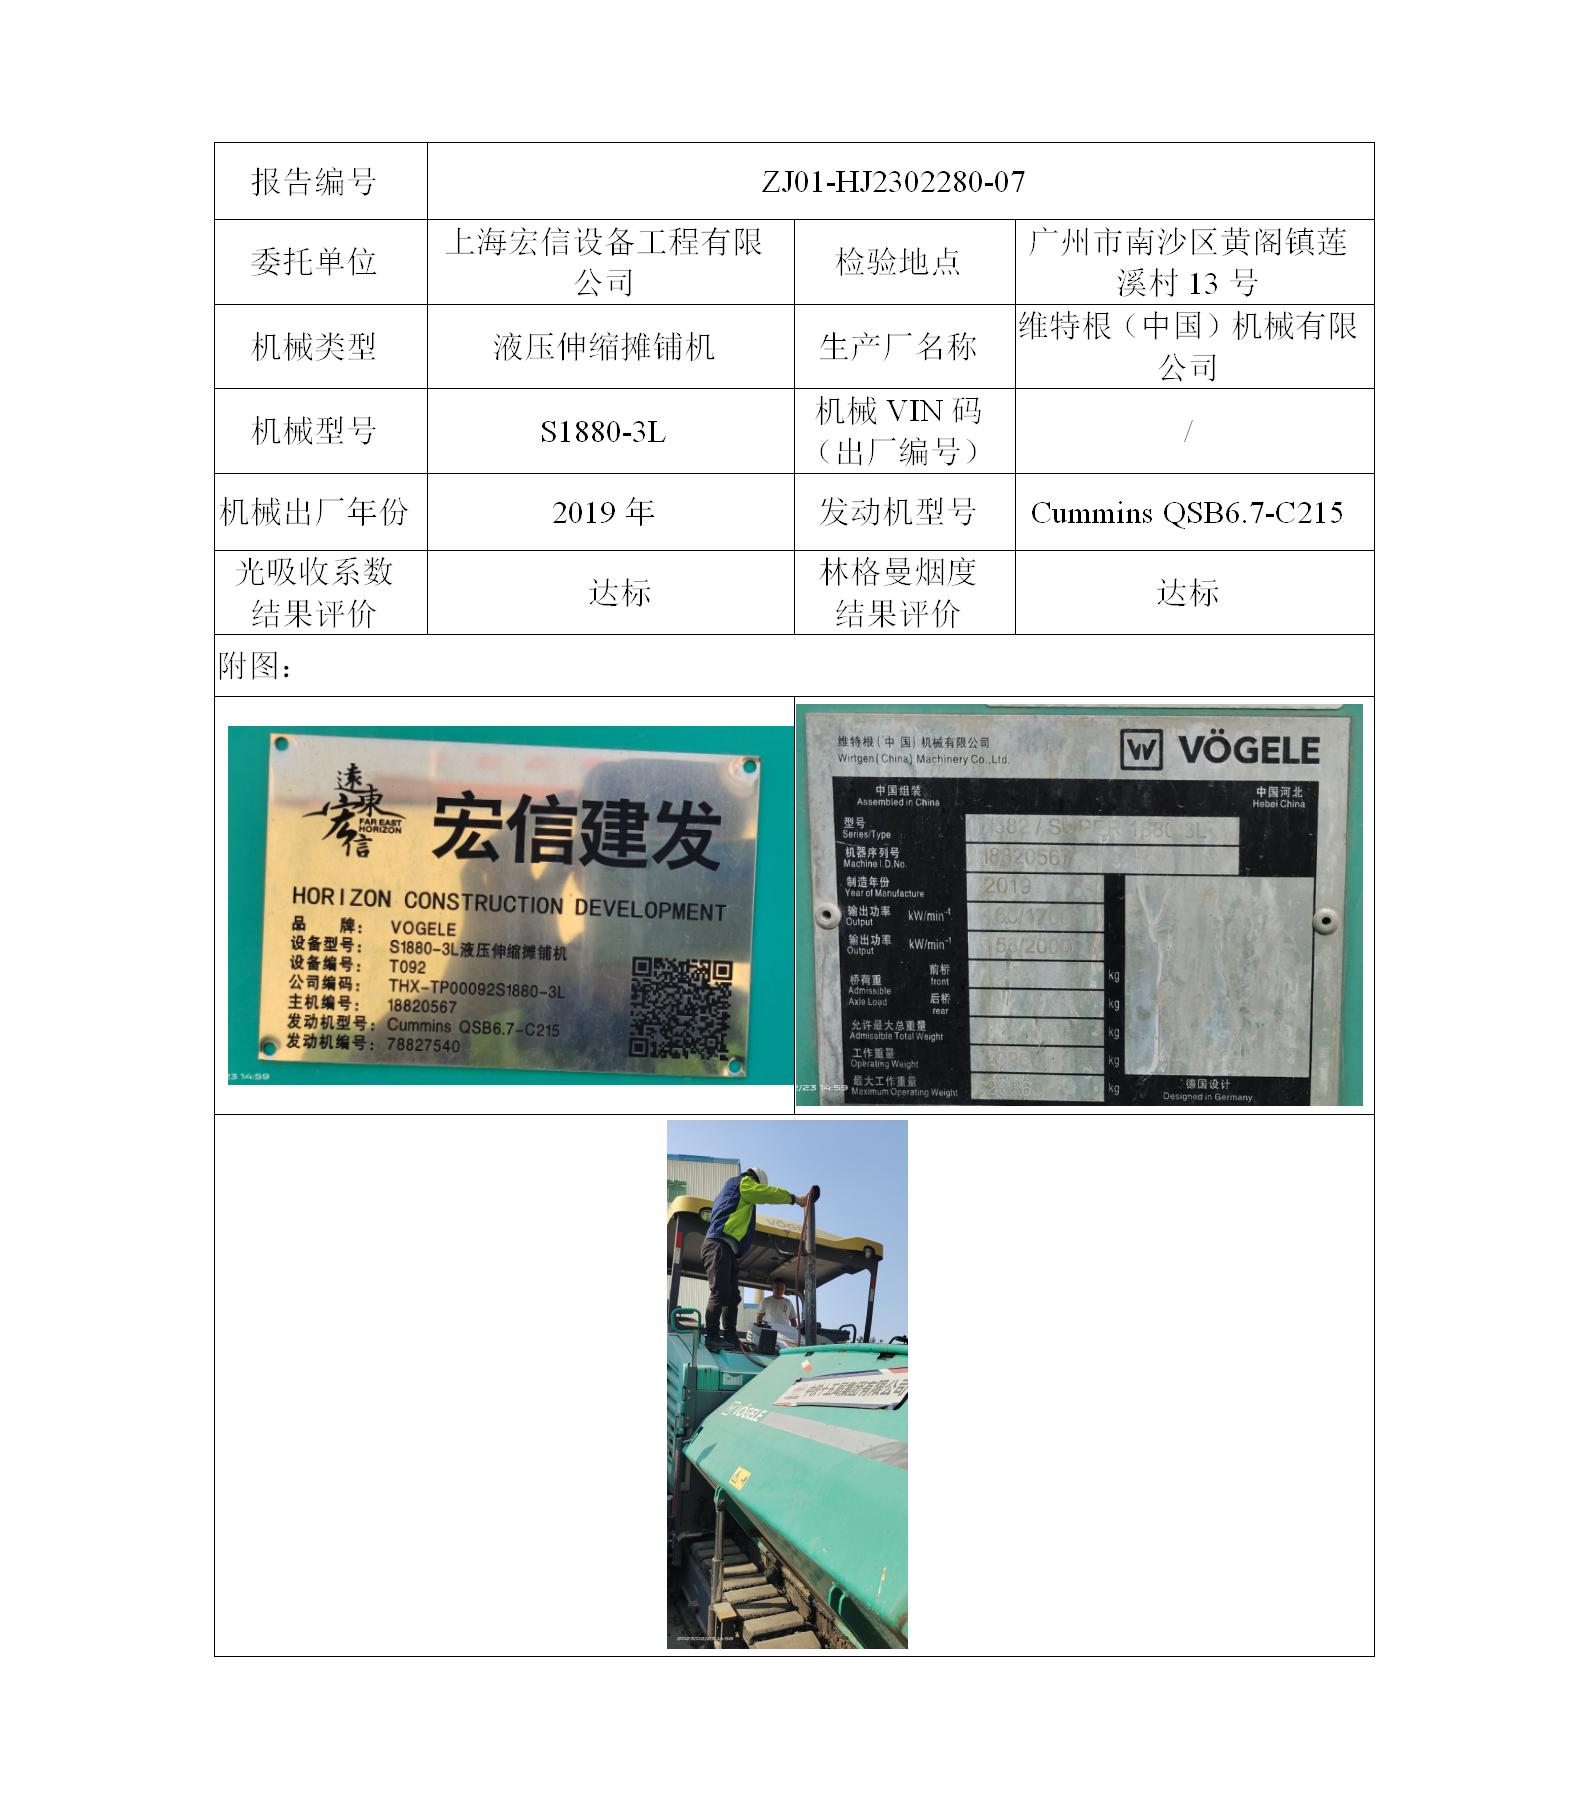 委托-ZJ01-HJ2302280-07上海宏信设备工程有限公司（叉车废气）二维码-陈咏娟_01.jpg